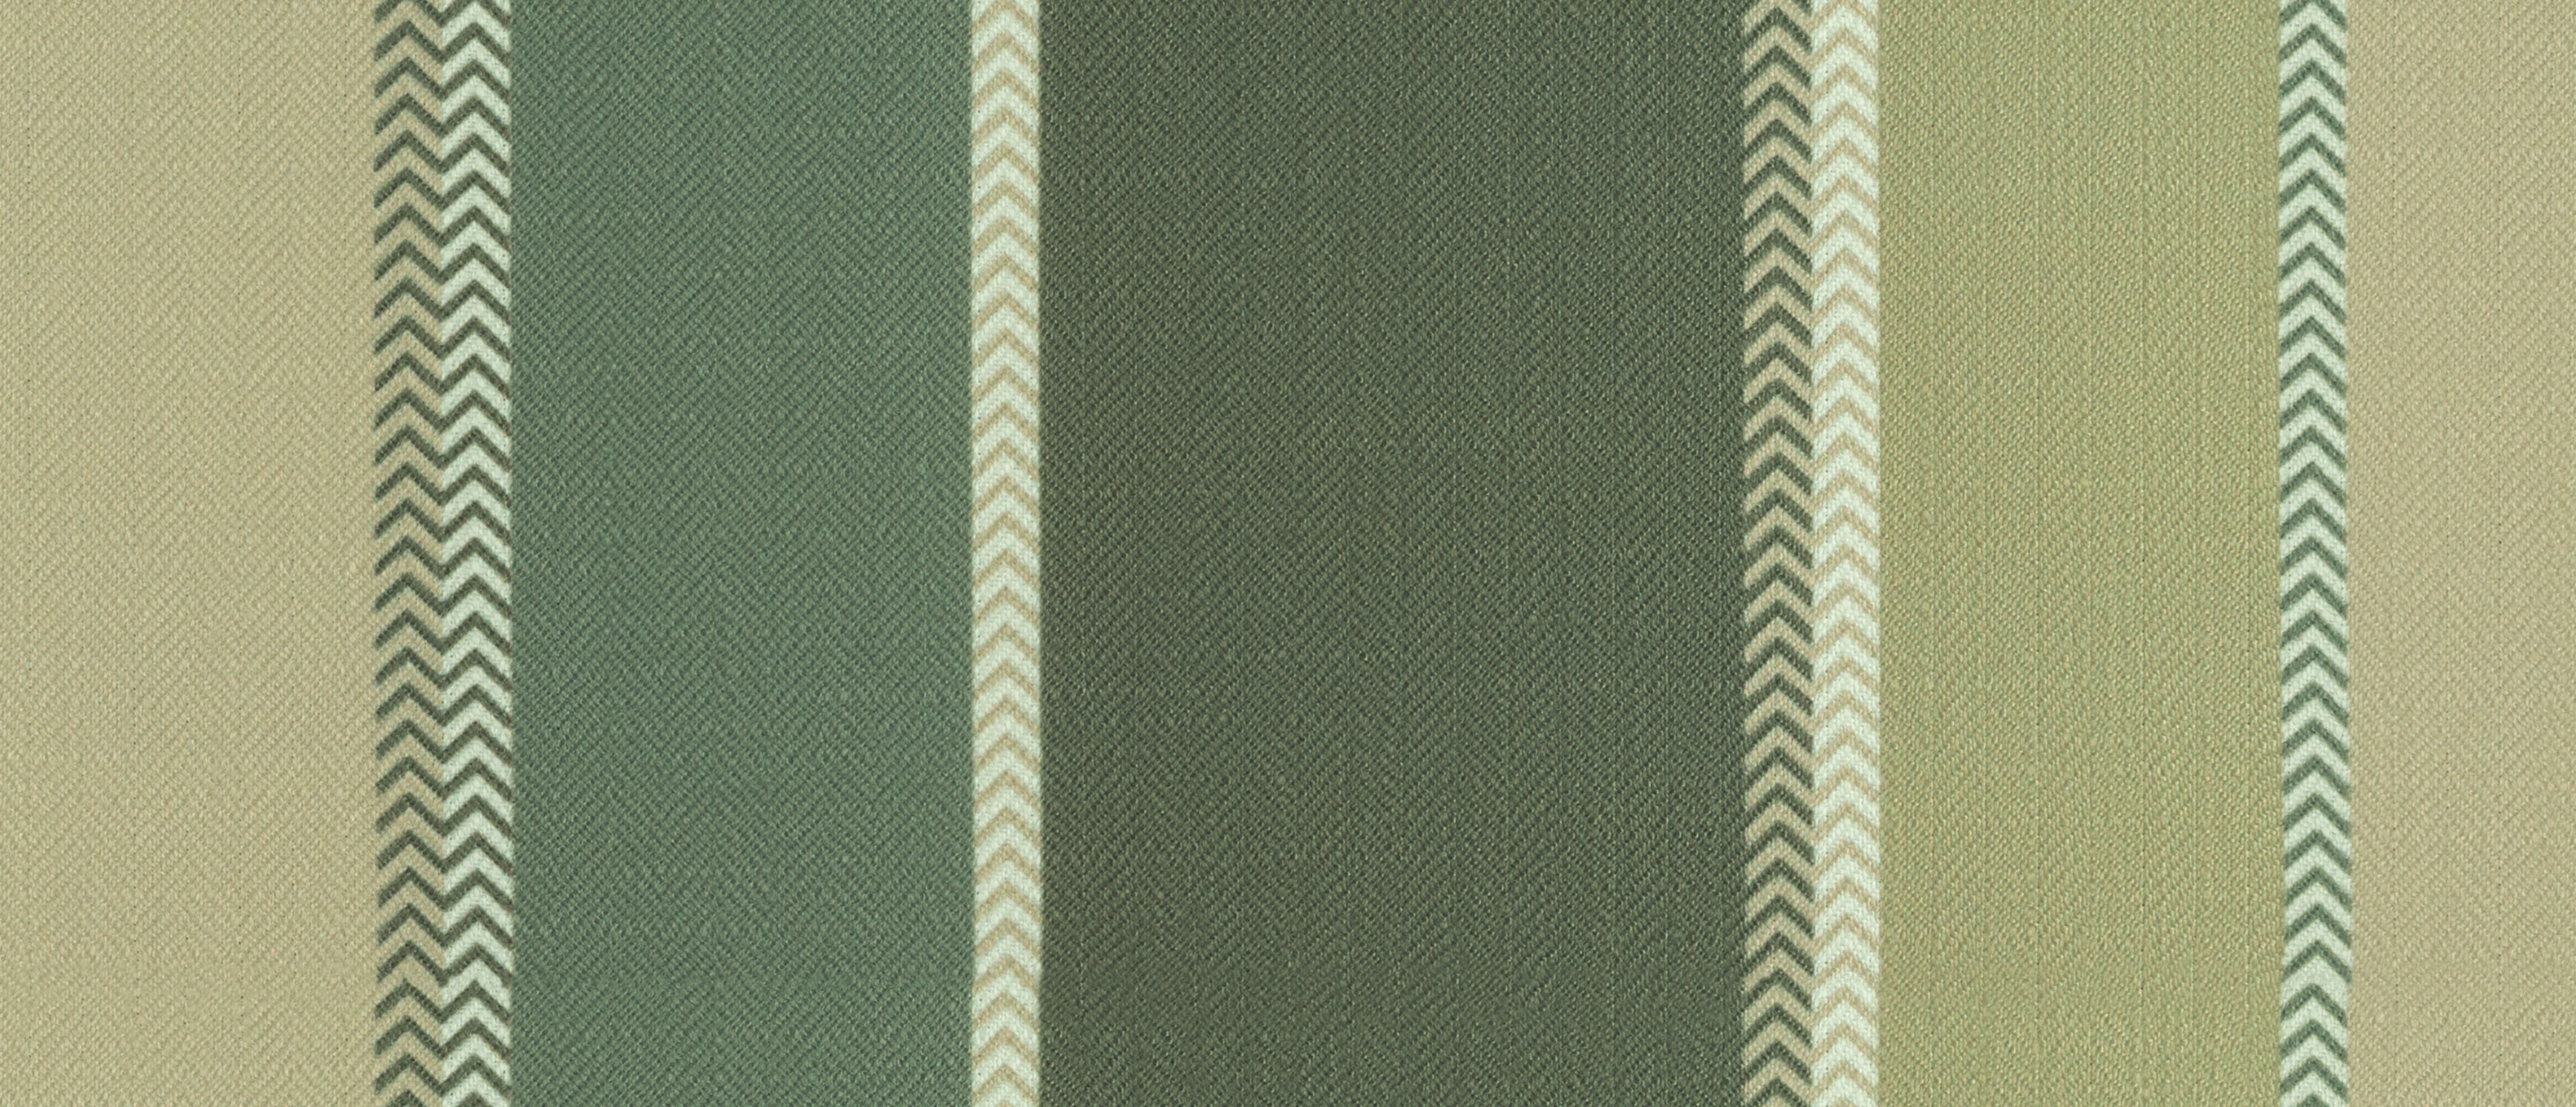 Feather Greensward Fabric